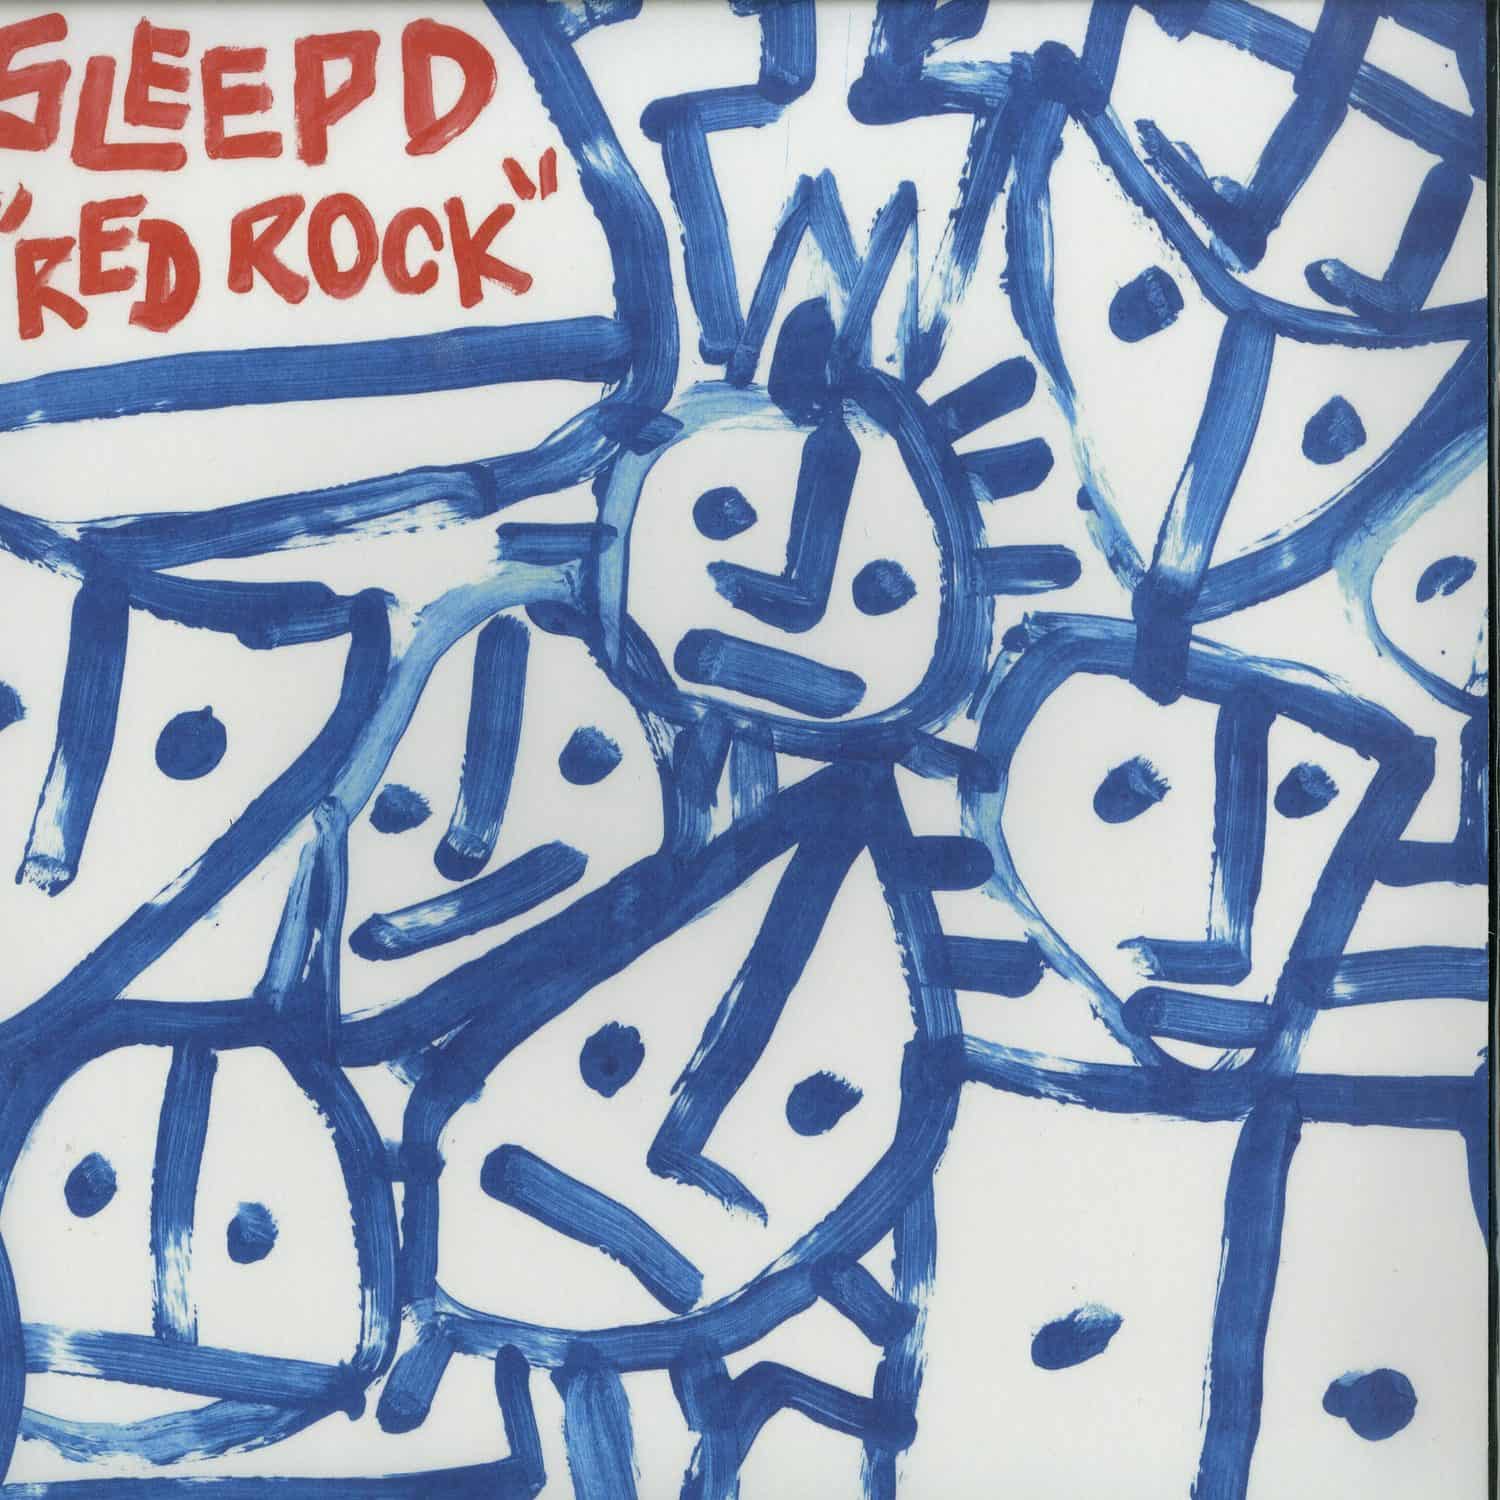 Sleep D - RED ROCK